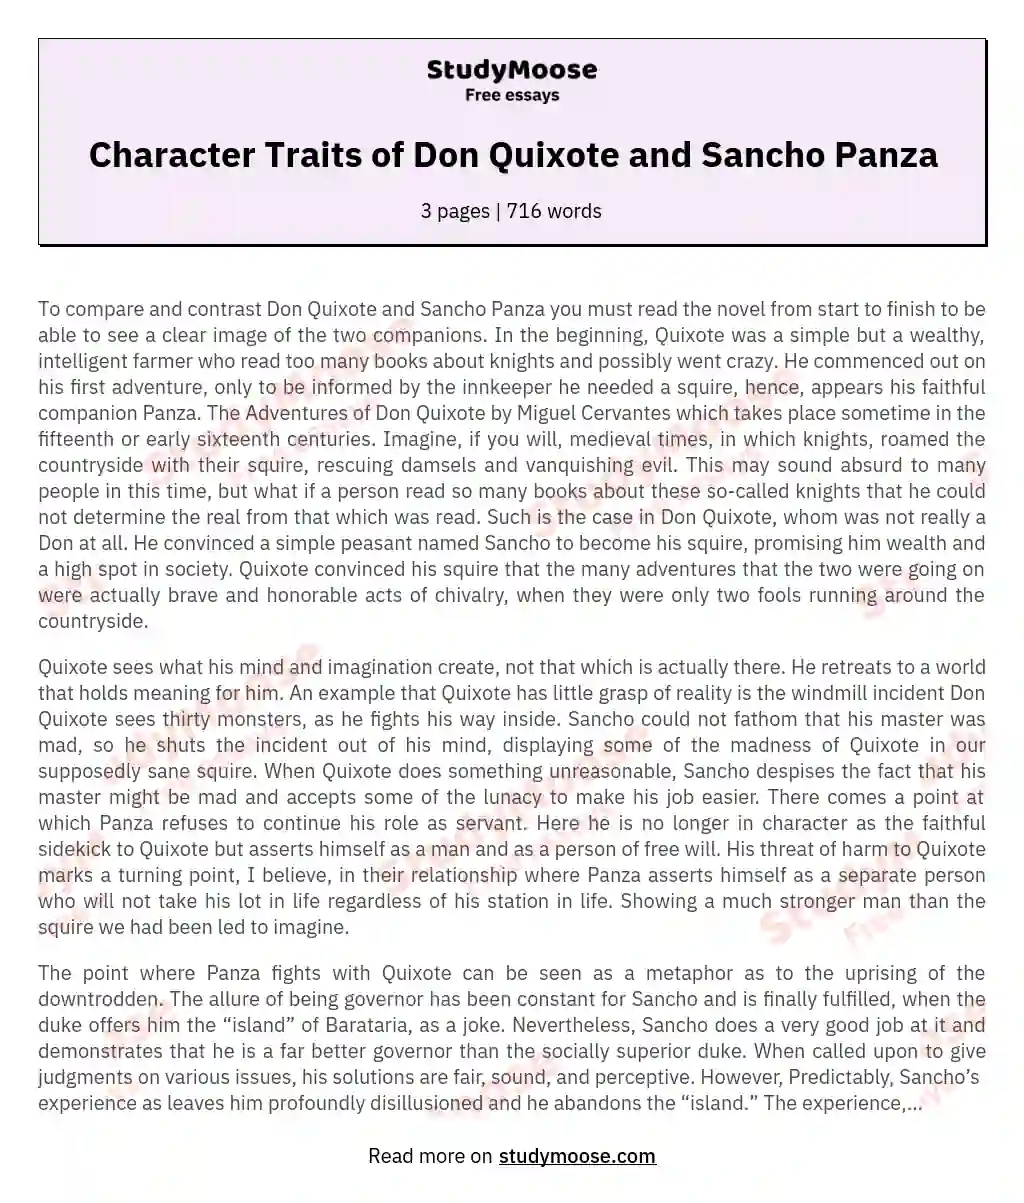 Character Traits of Don Quixote and Sancho Panza